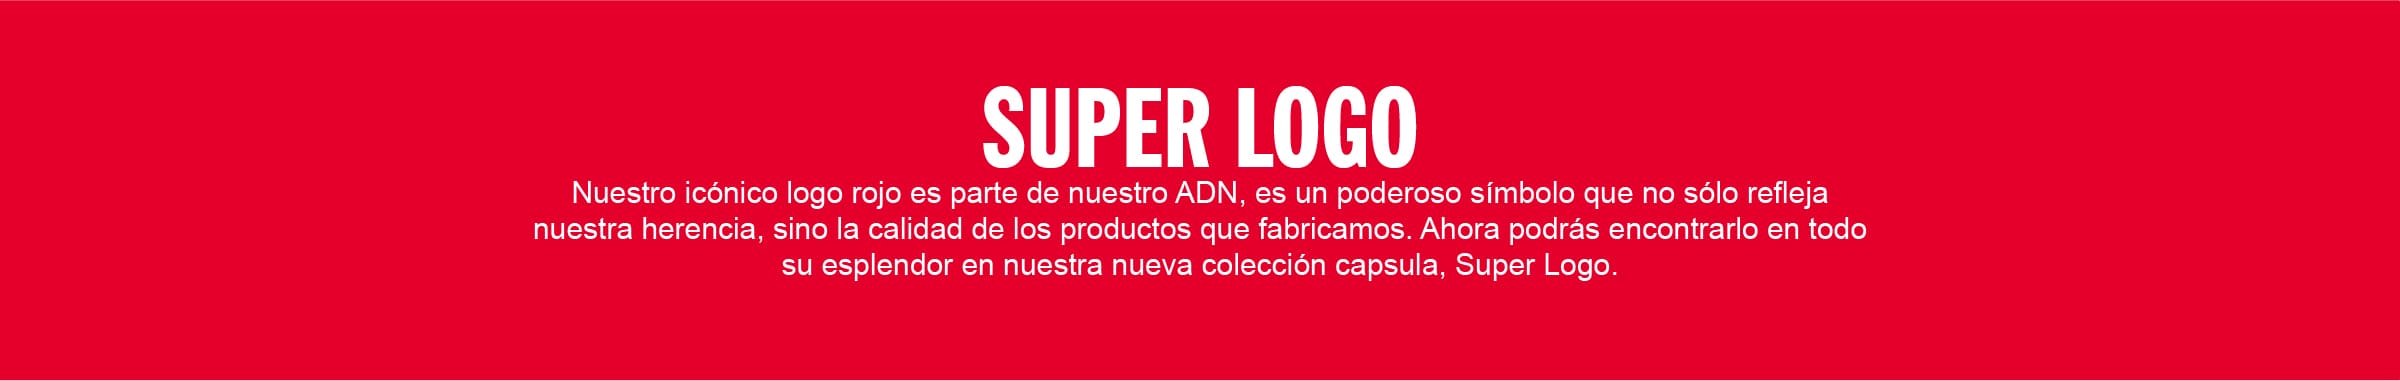 Descripcion Super Logo